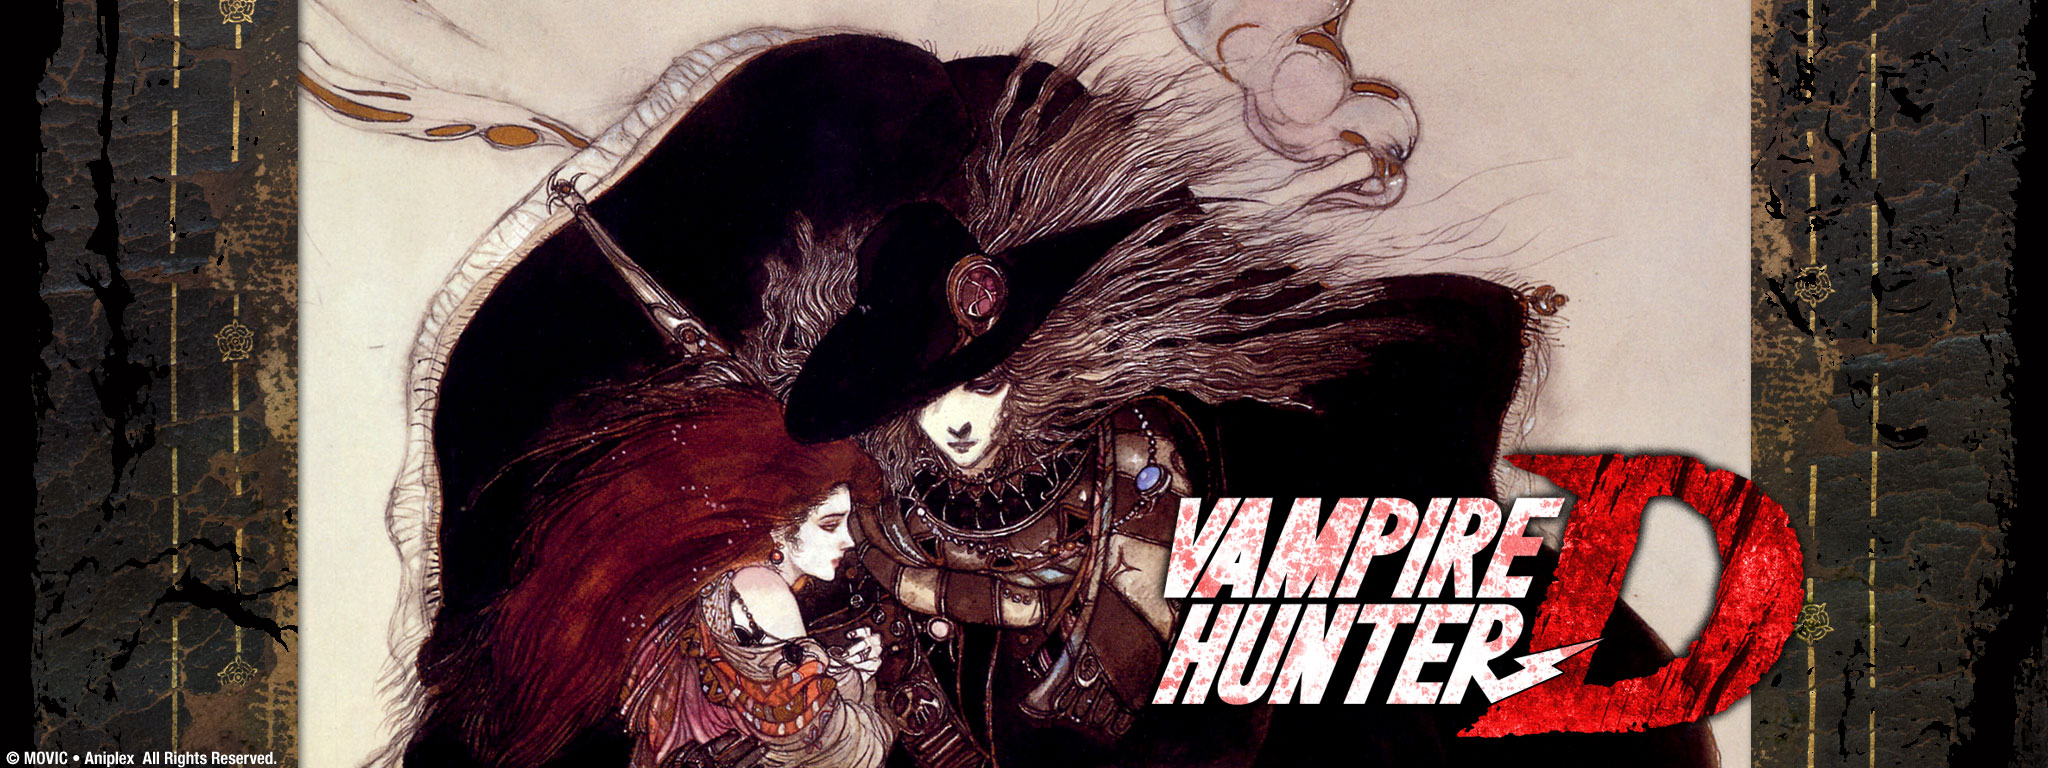 Title Art for Vampire Hunter D